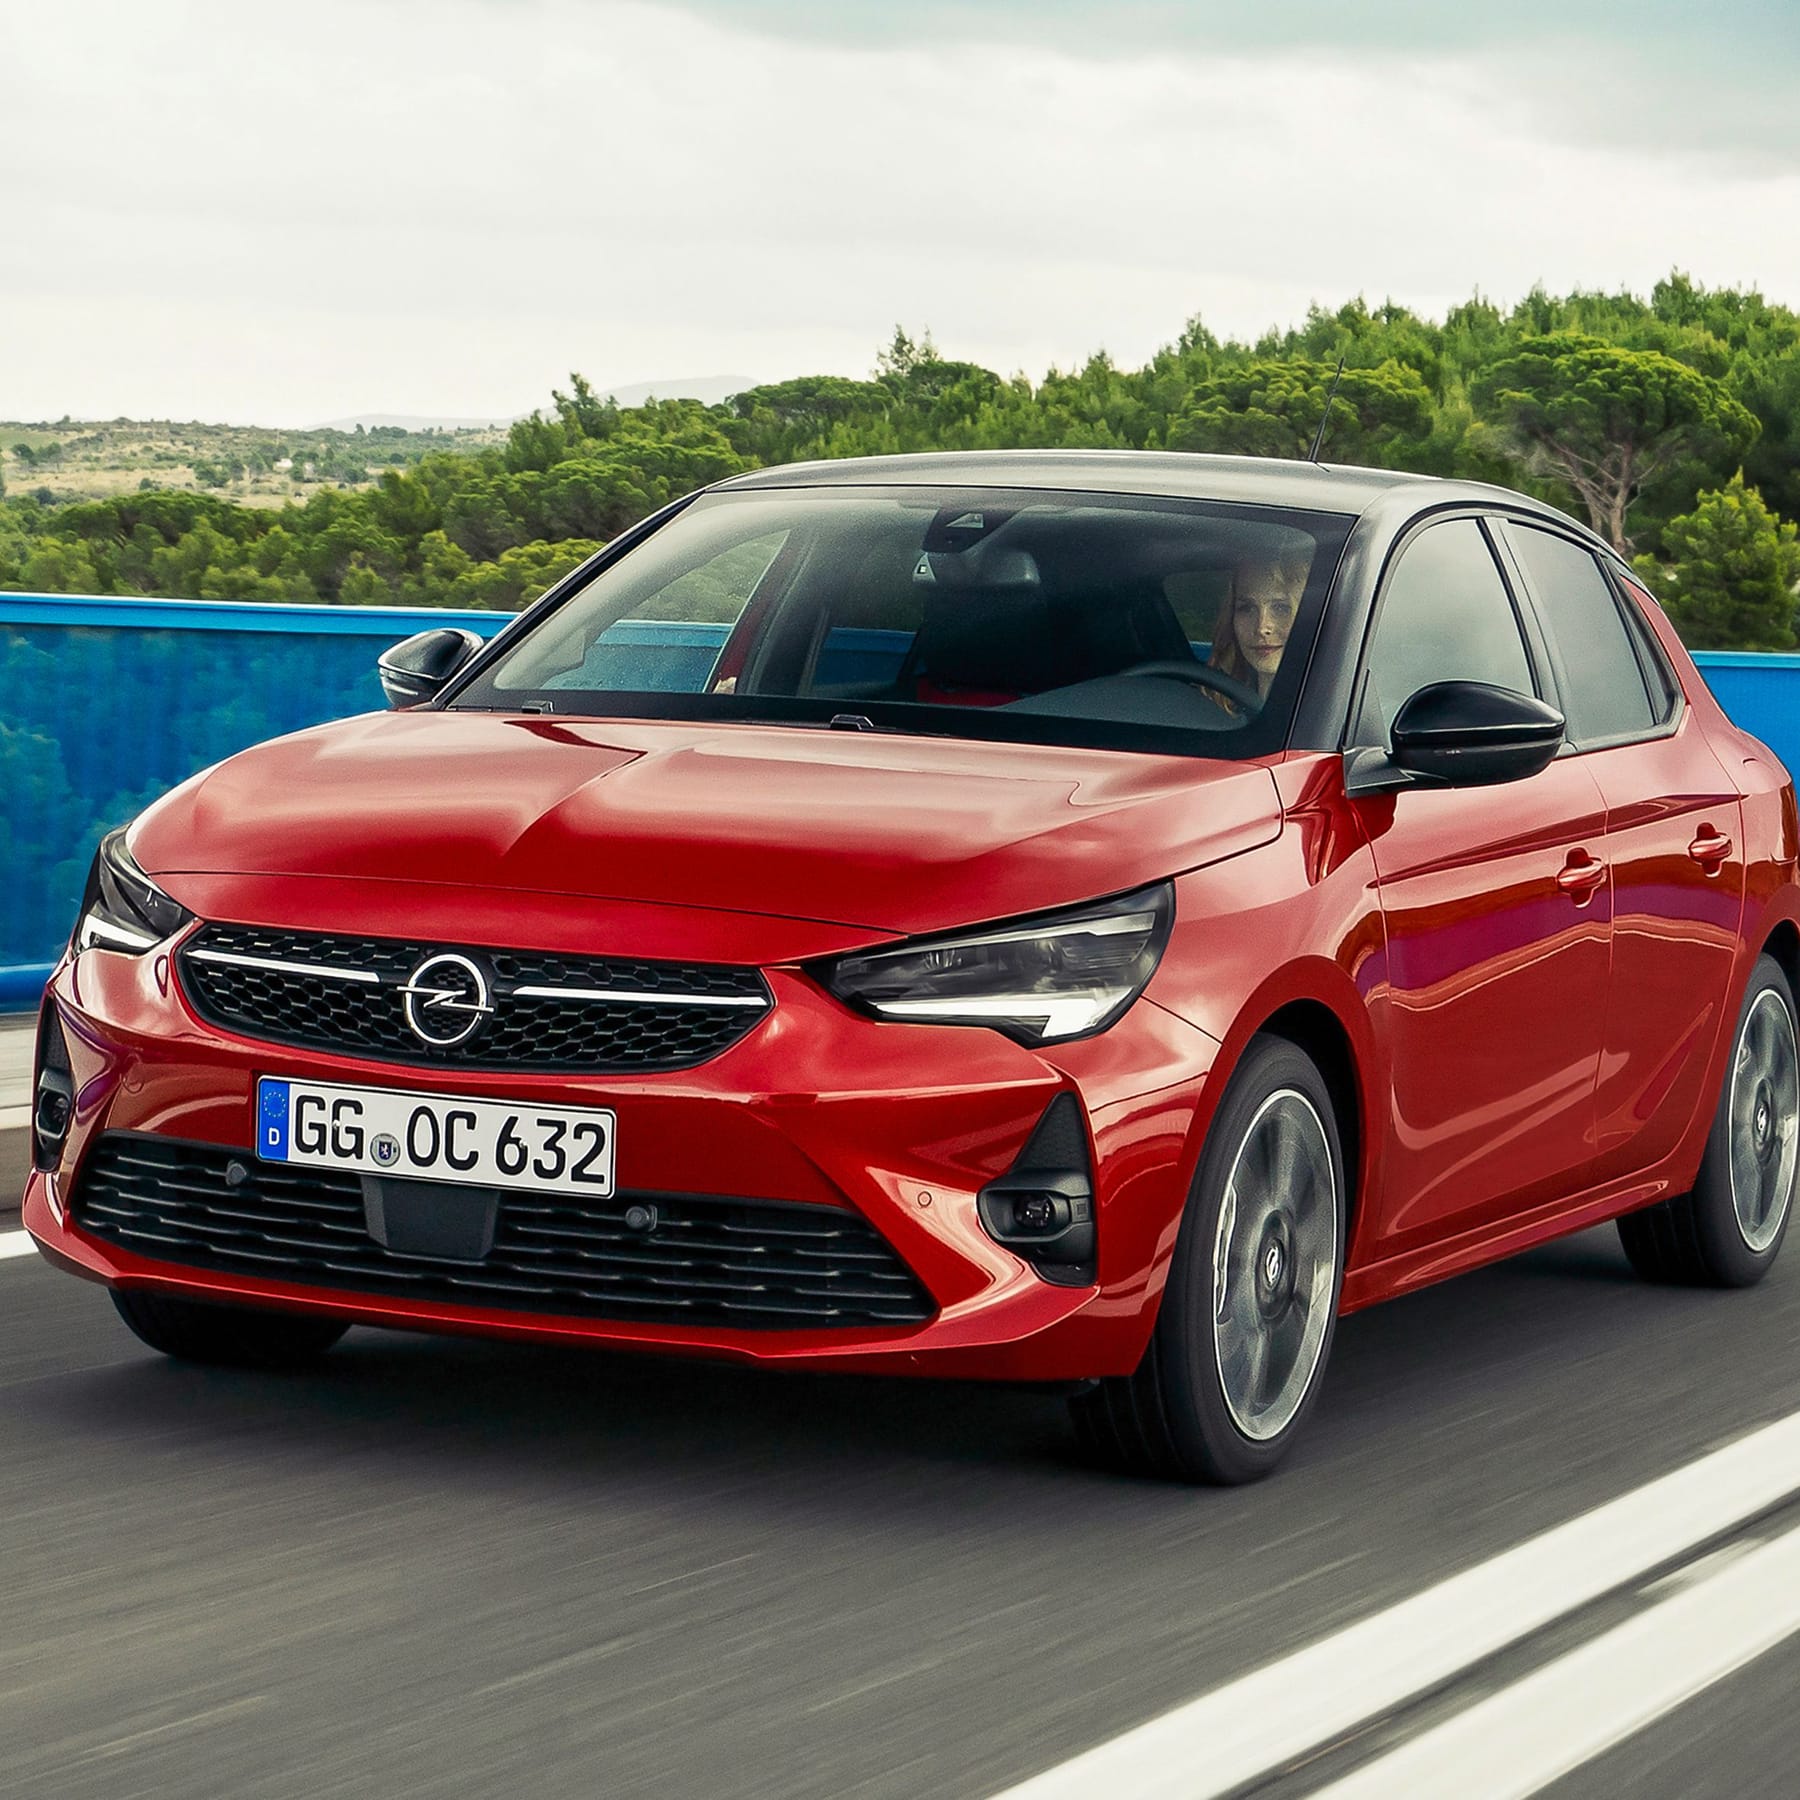 Erwischt: Neuer Opel Corsa